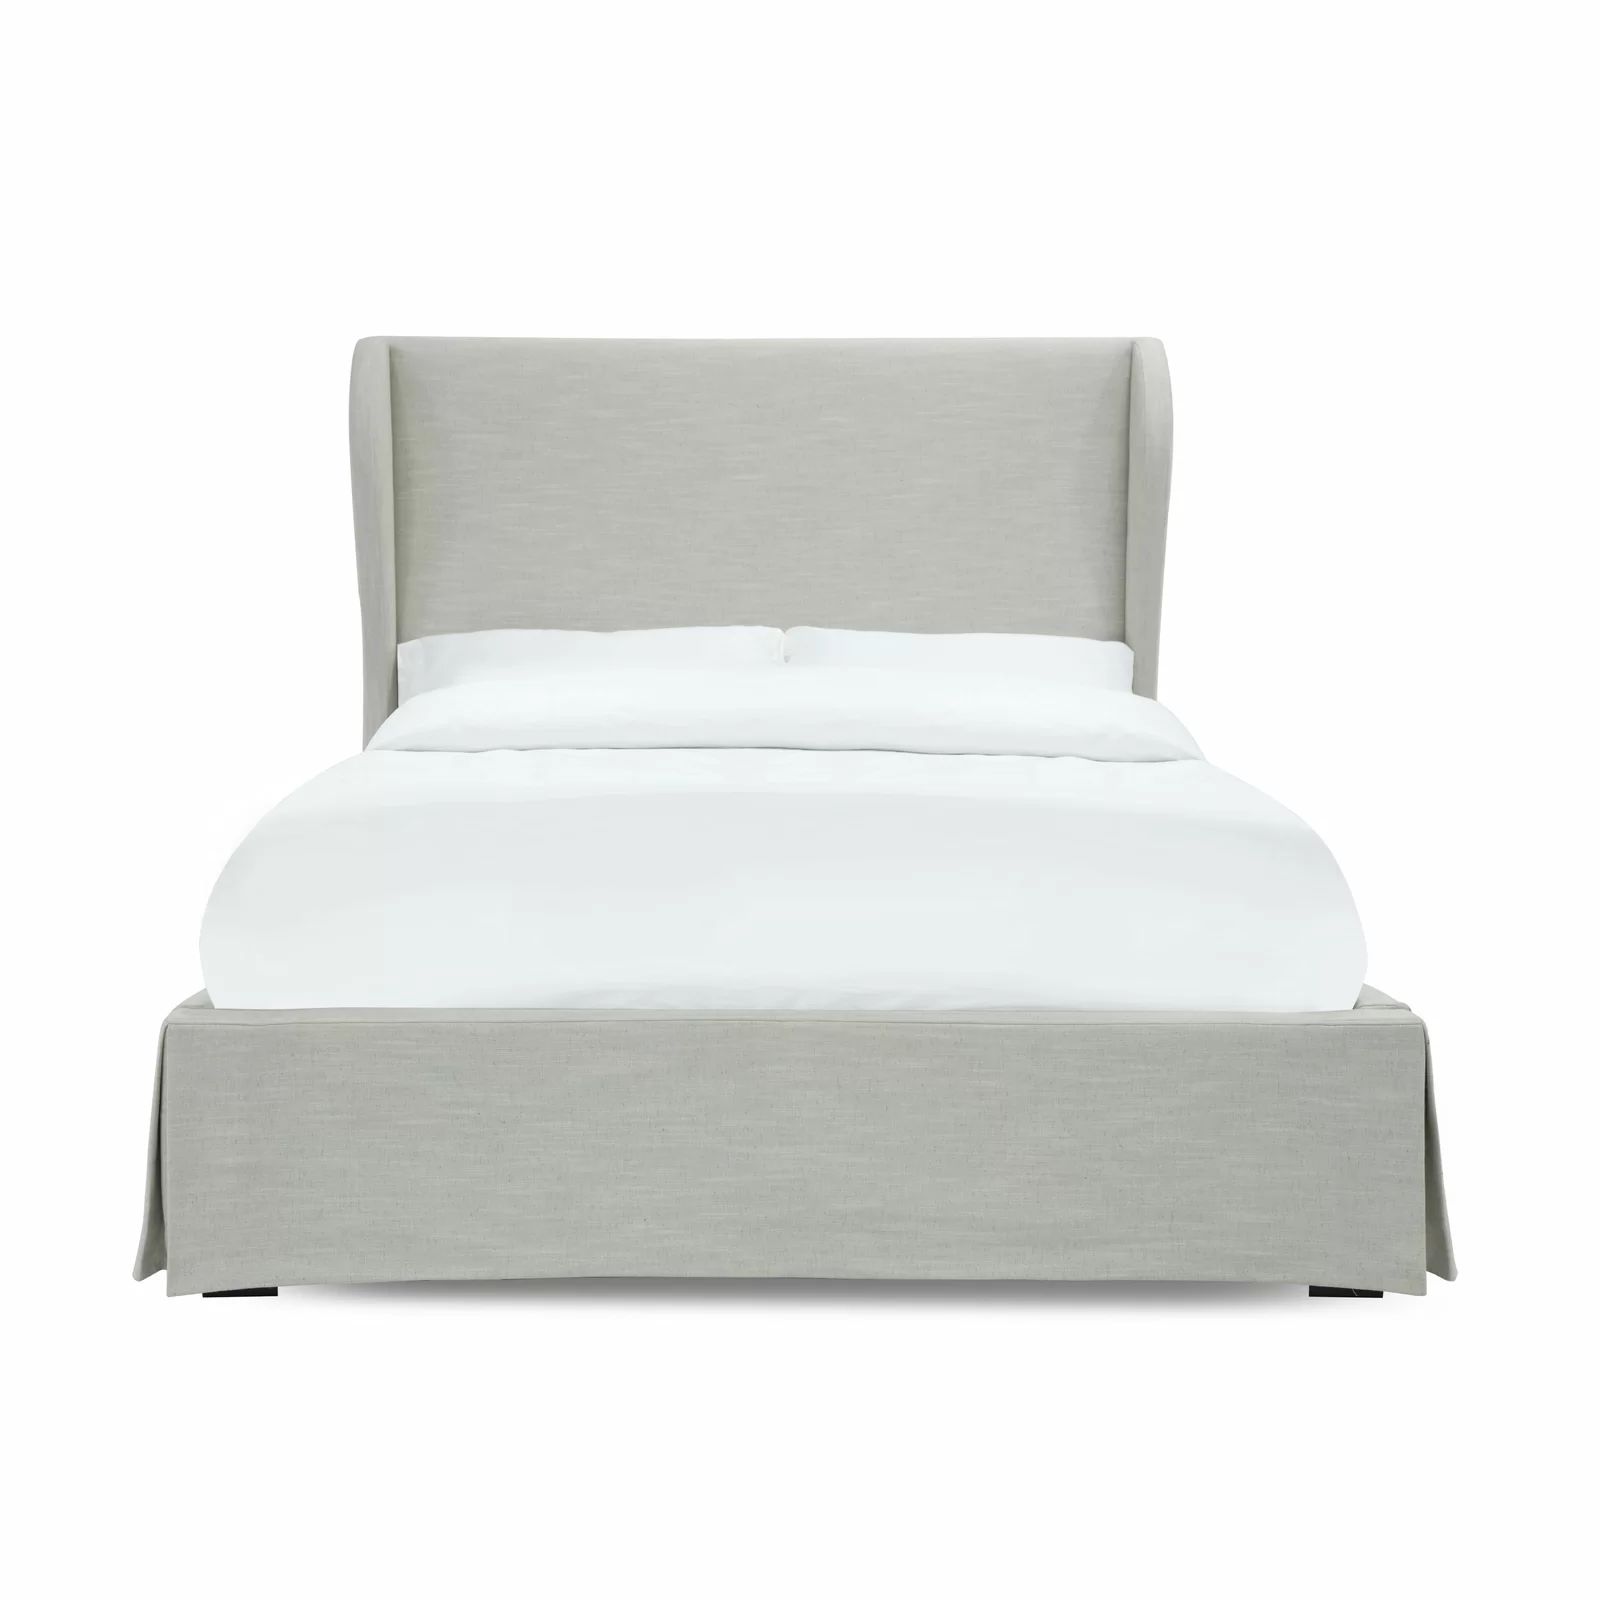 Hampden-Sydney Upholstered Low Profile Platform Bed | Wayfair North America